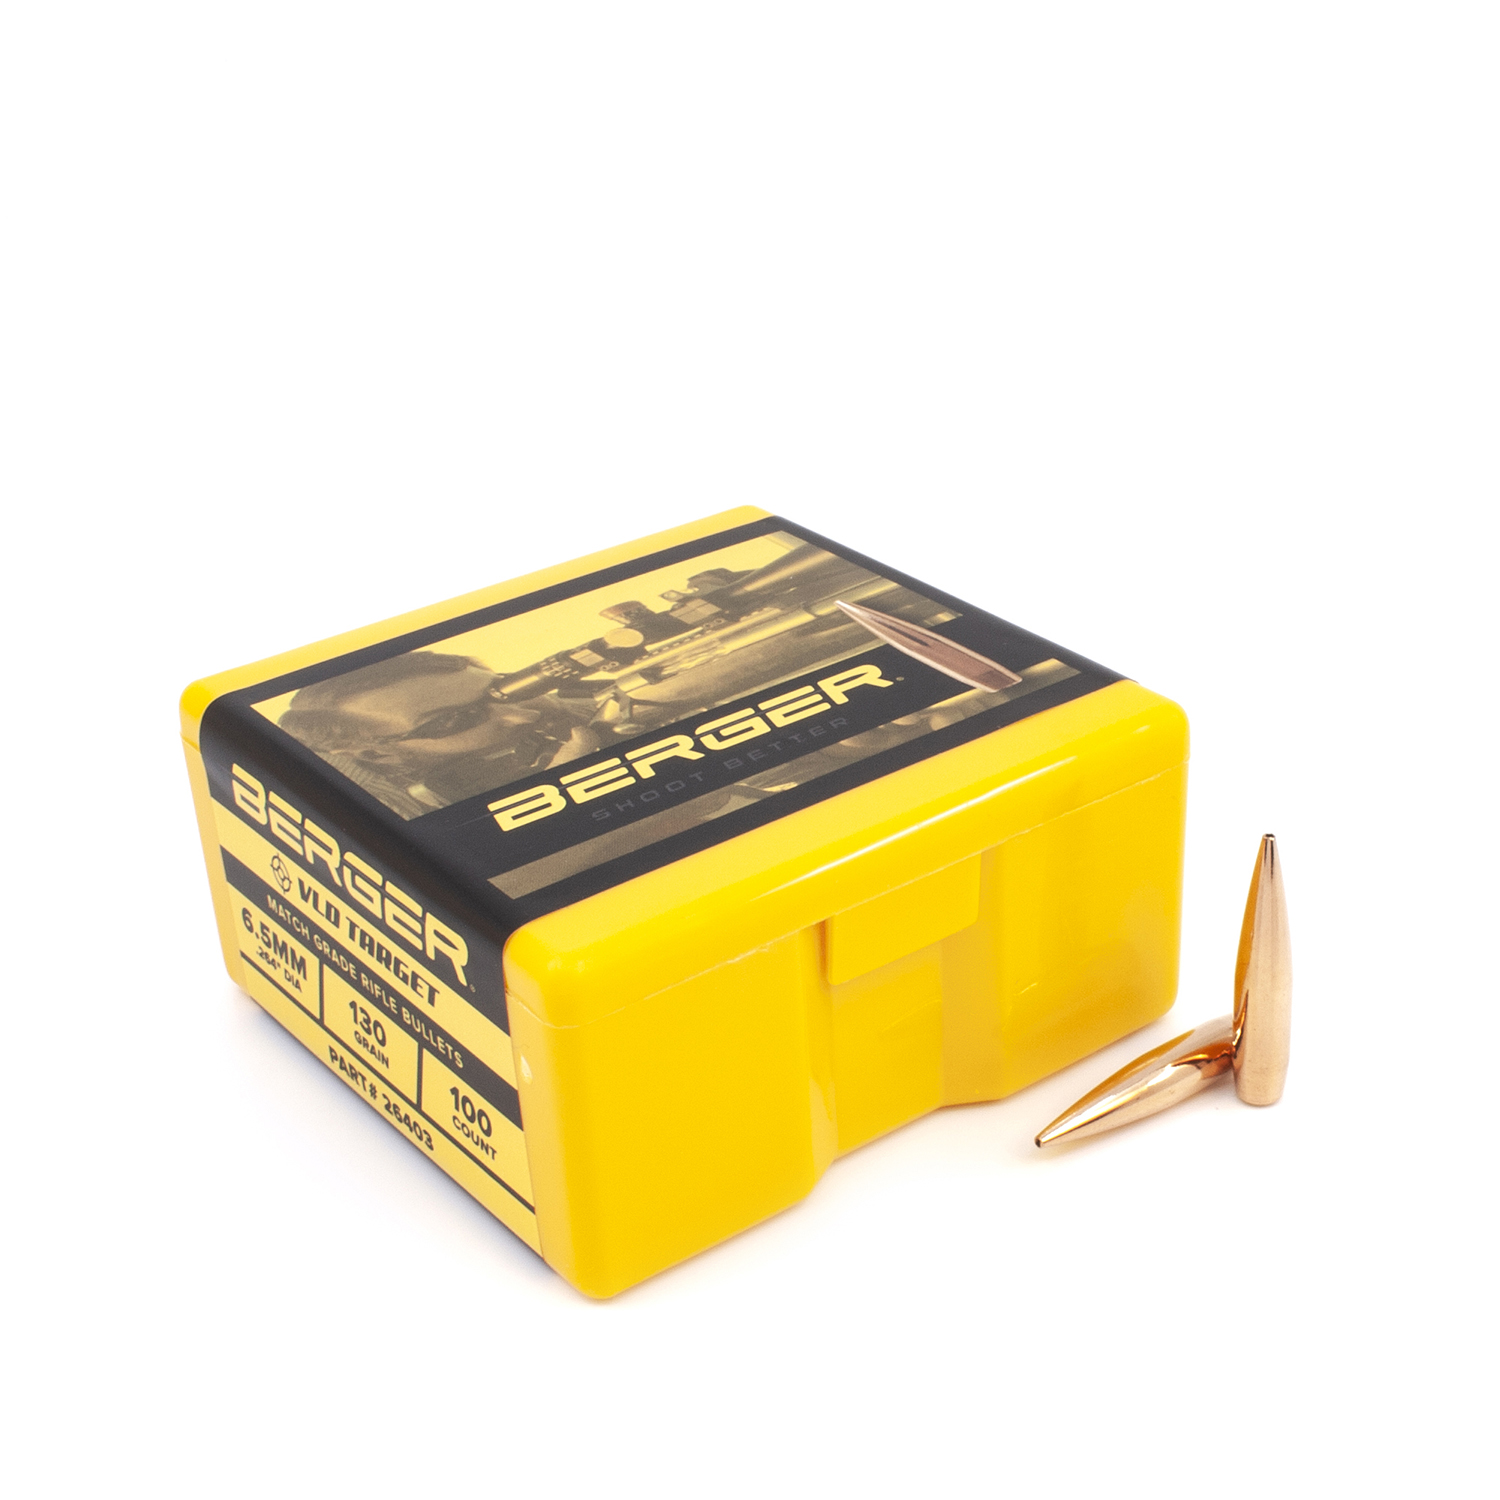 Berger Bullets - 6.5mm, 130 gr. VLD Target - Box of 100